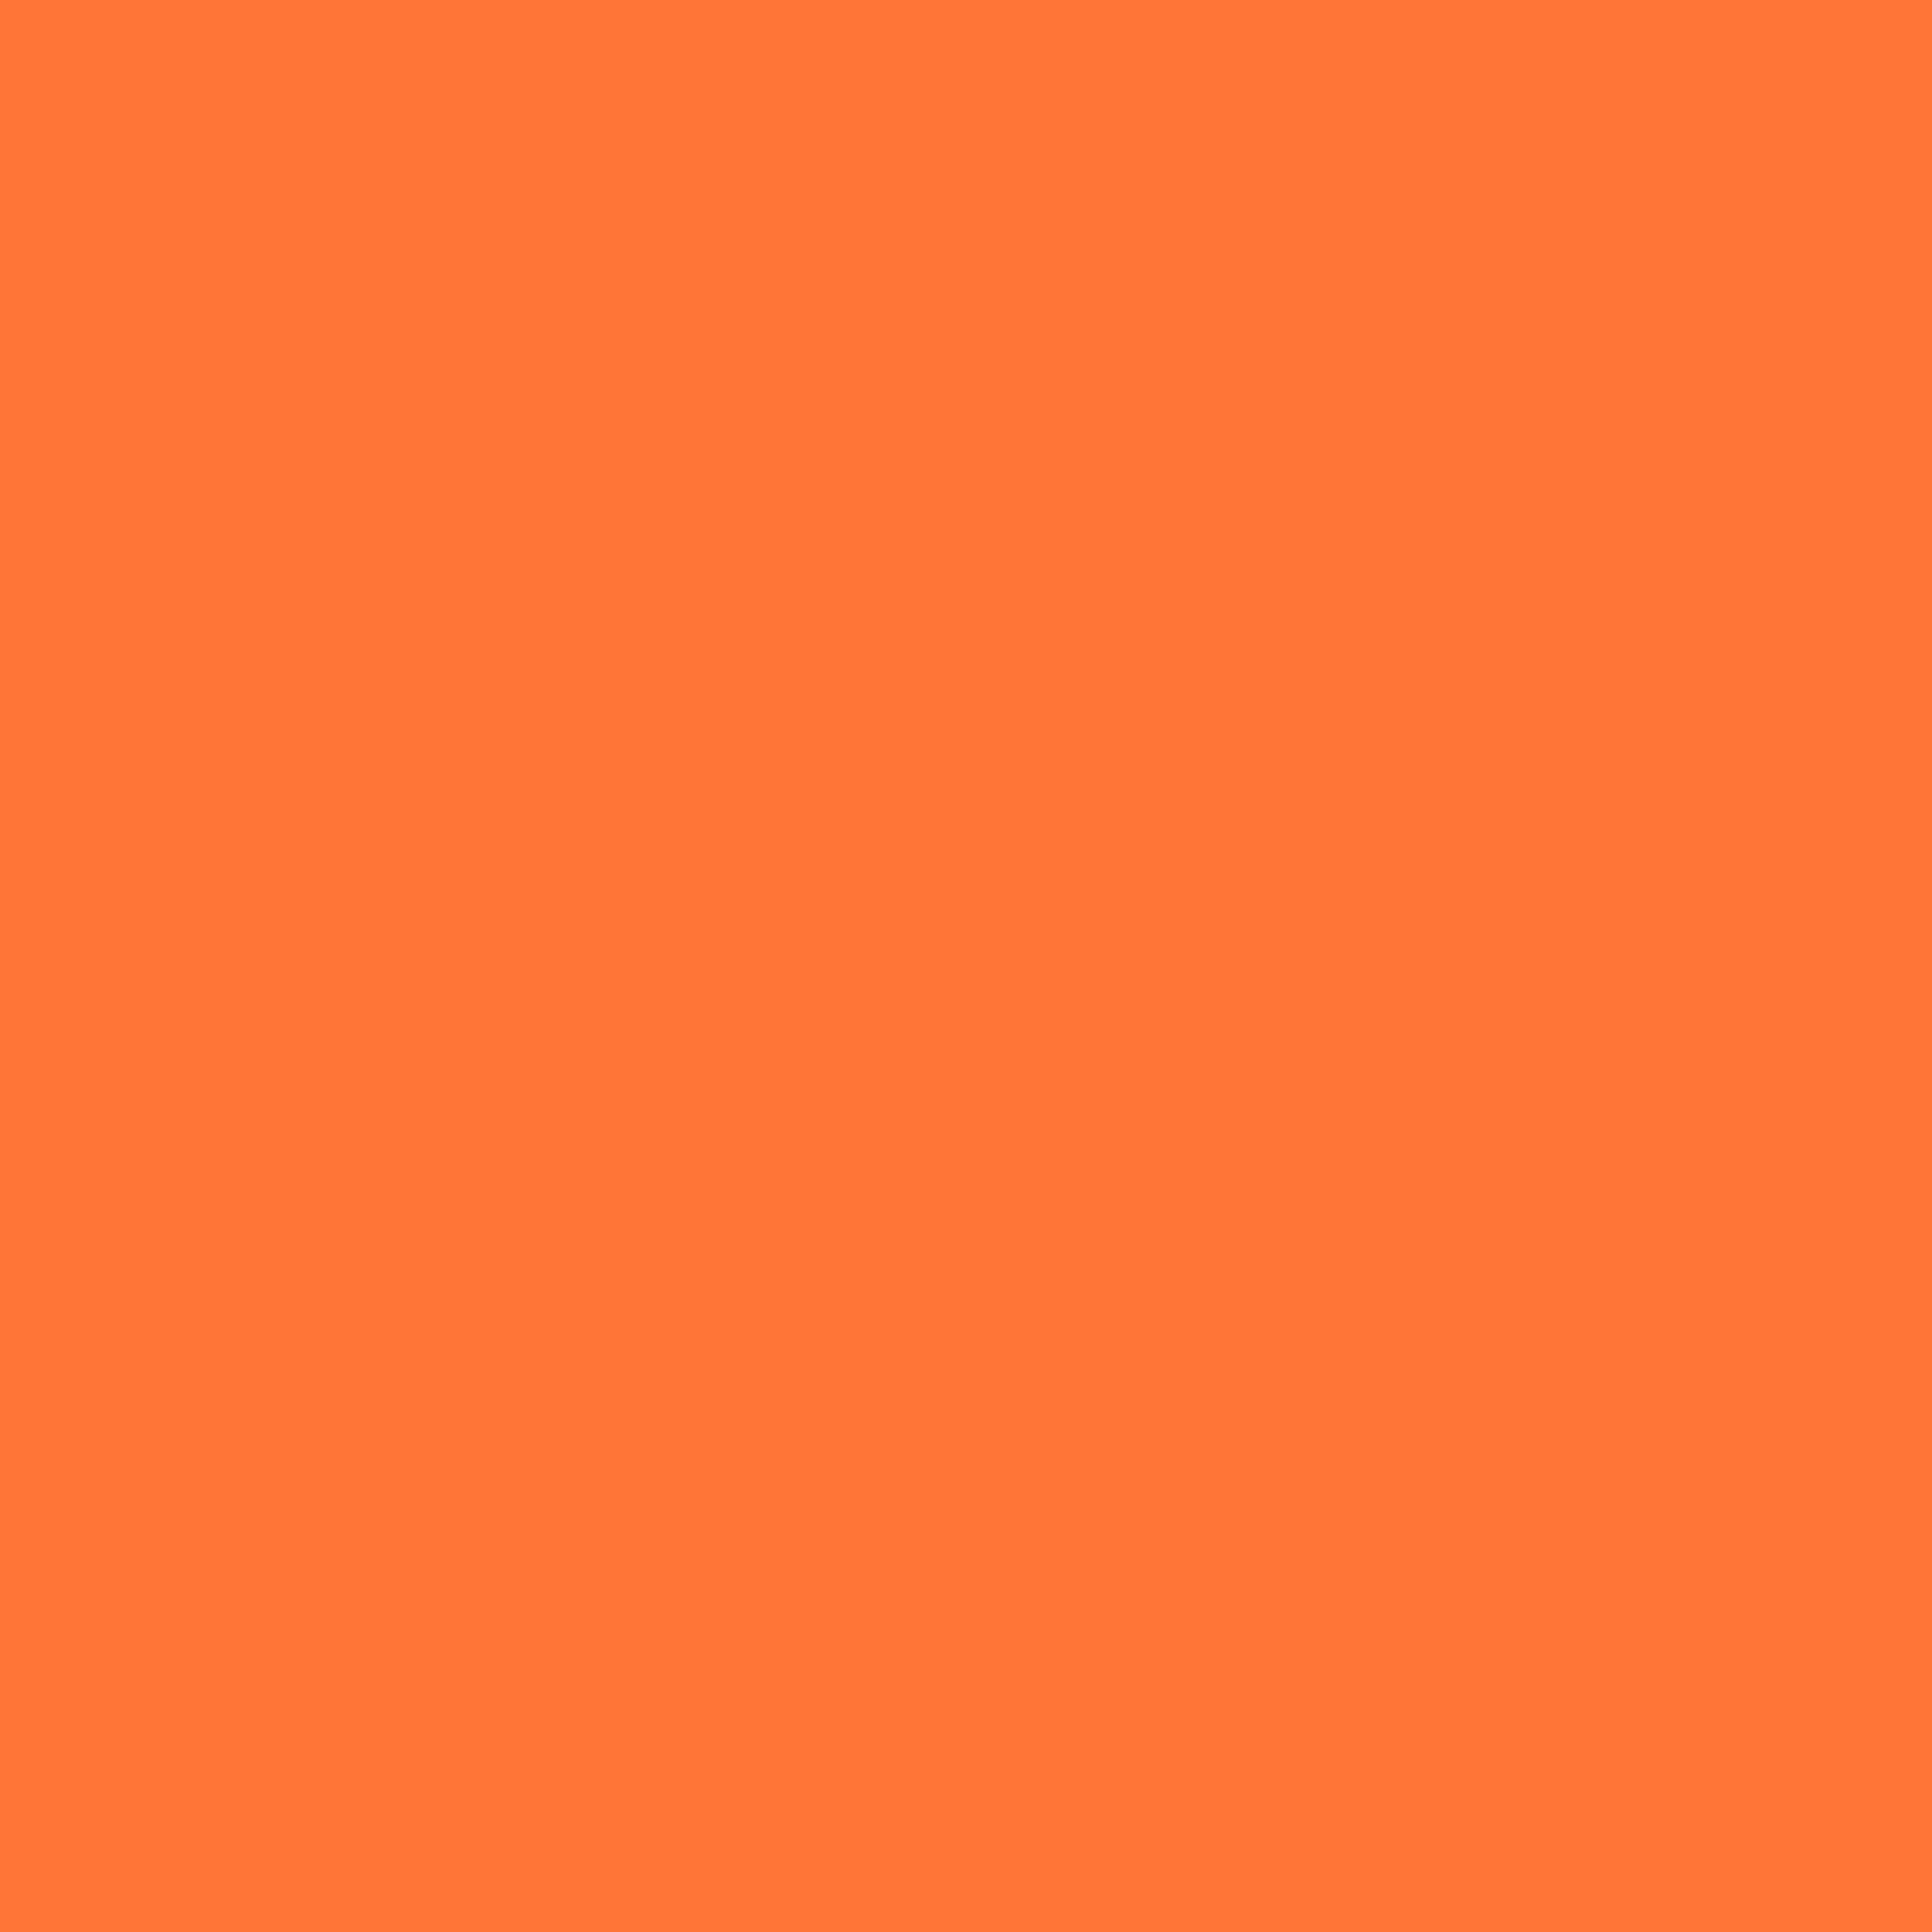 2048x2048 Orange Crayola Solid Color Background